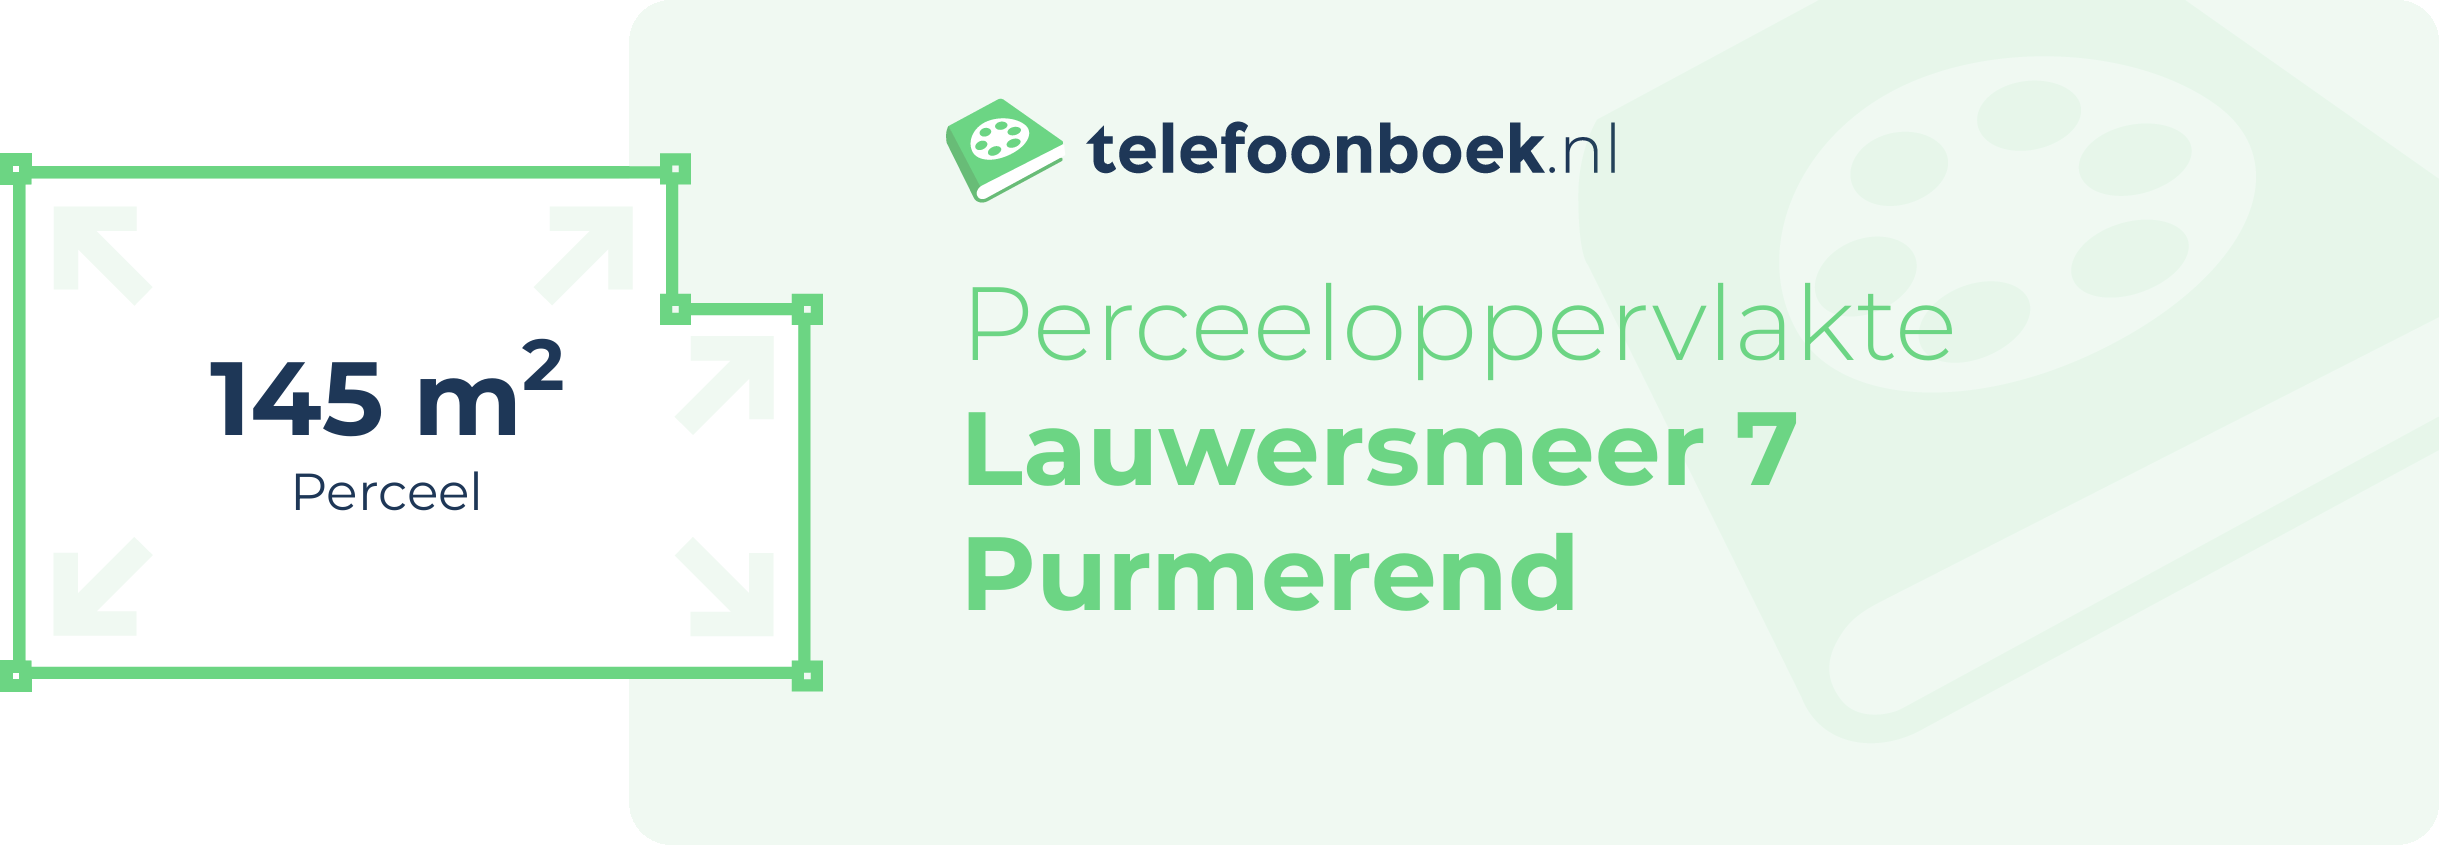 Perceeloppervlakte Lauwersmeer 7 Purmerend